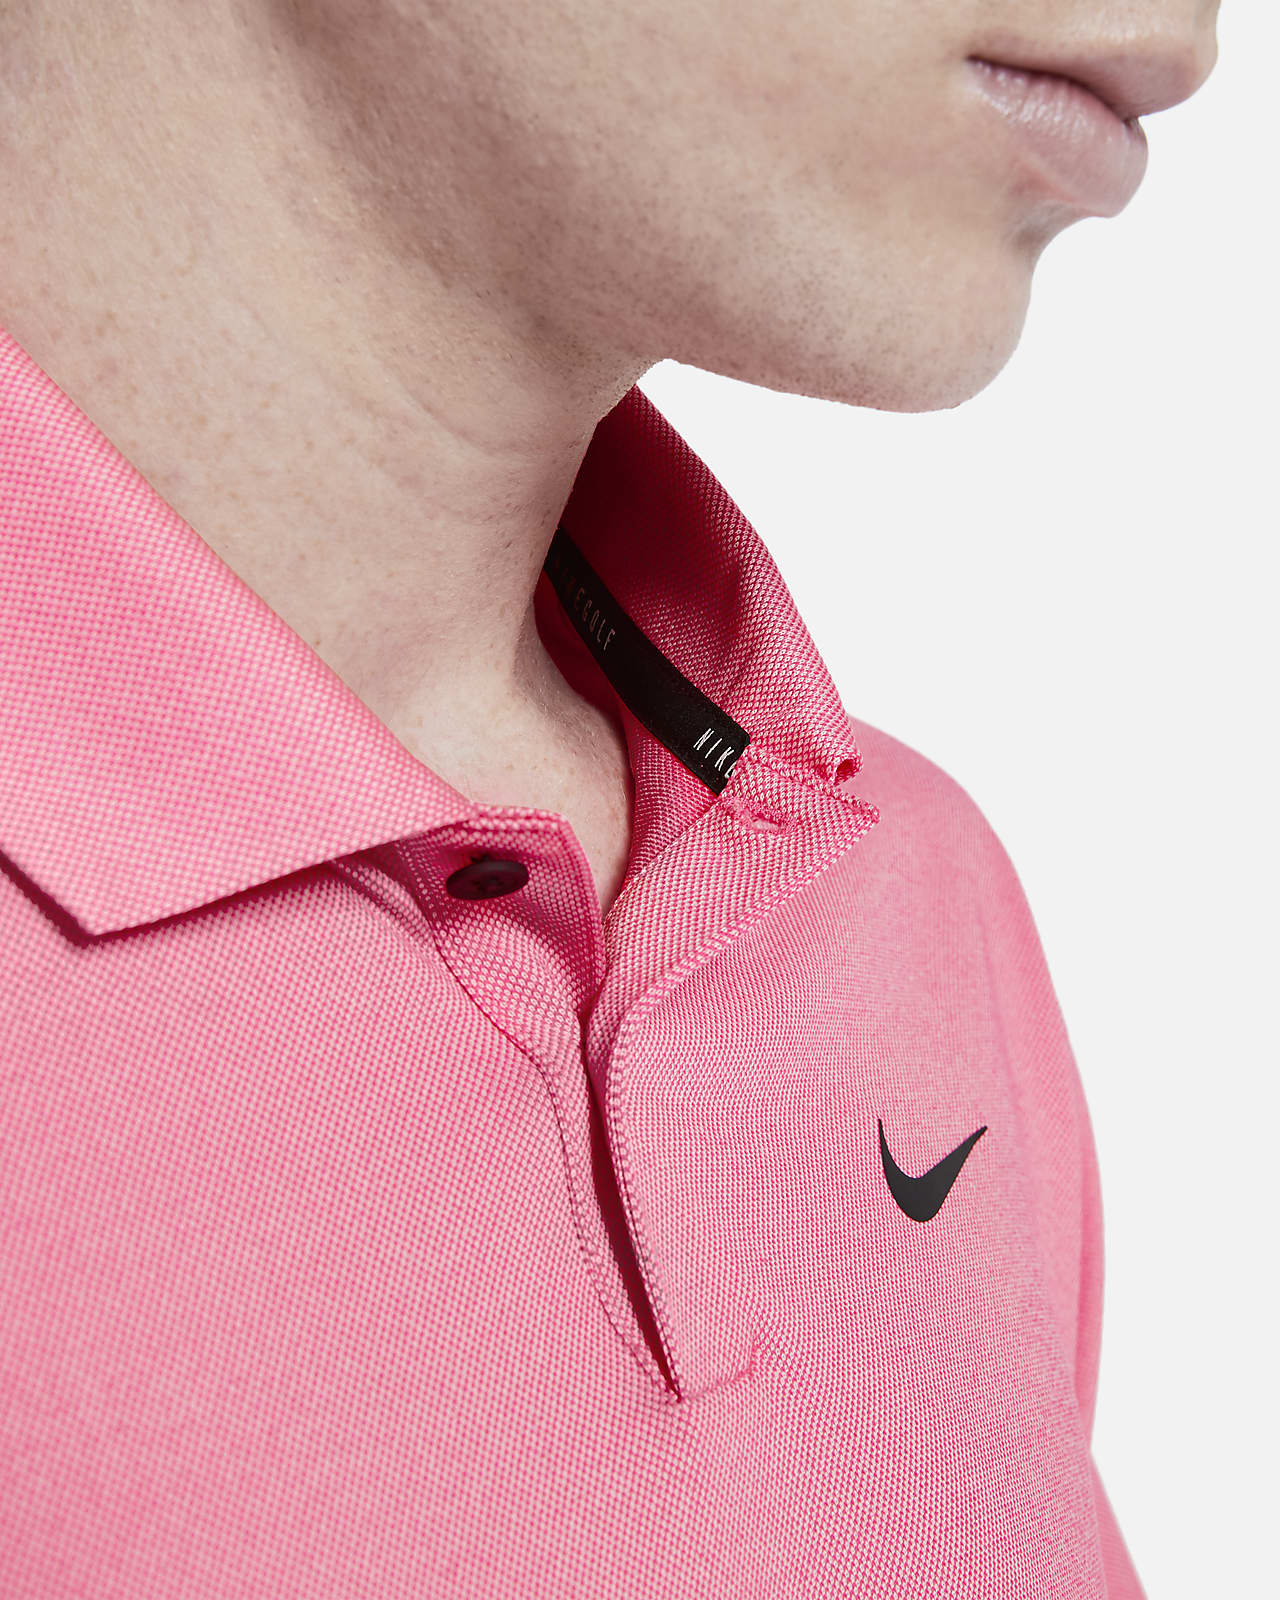 pink golf shirt mens